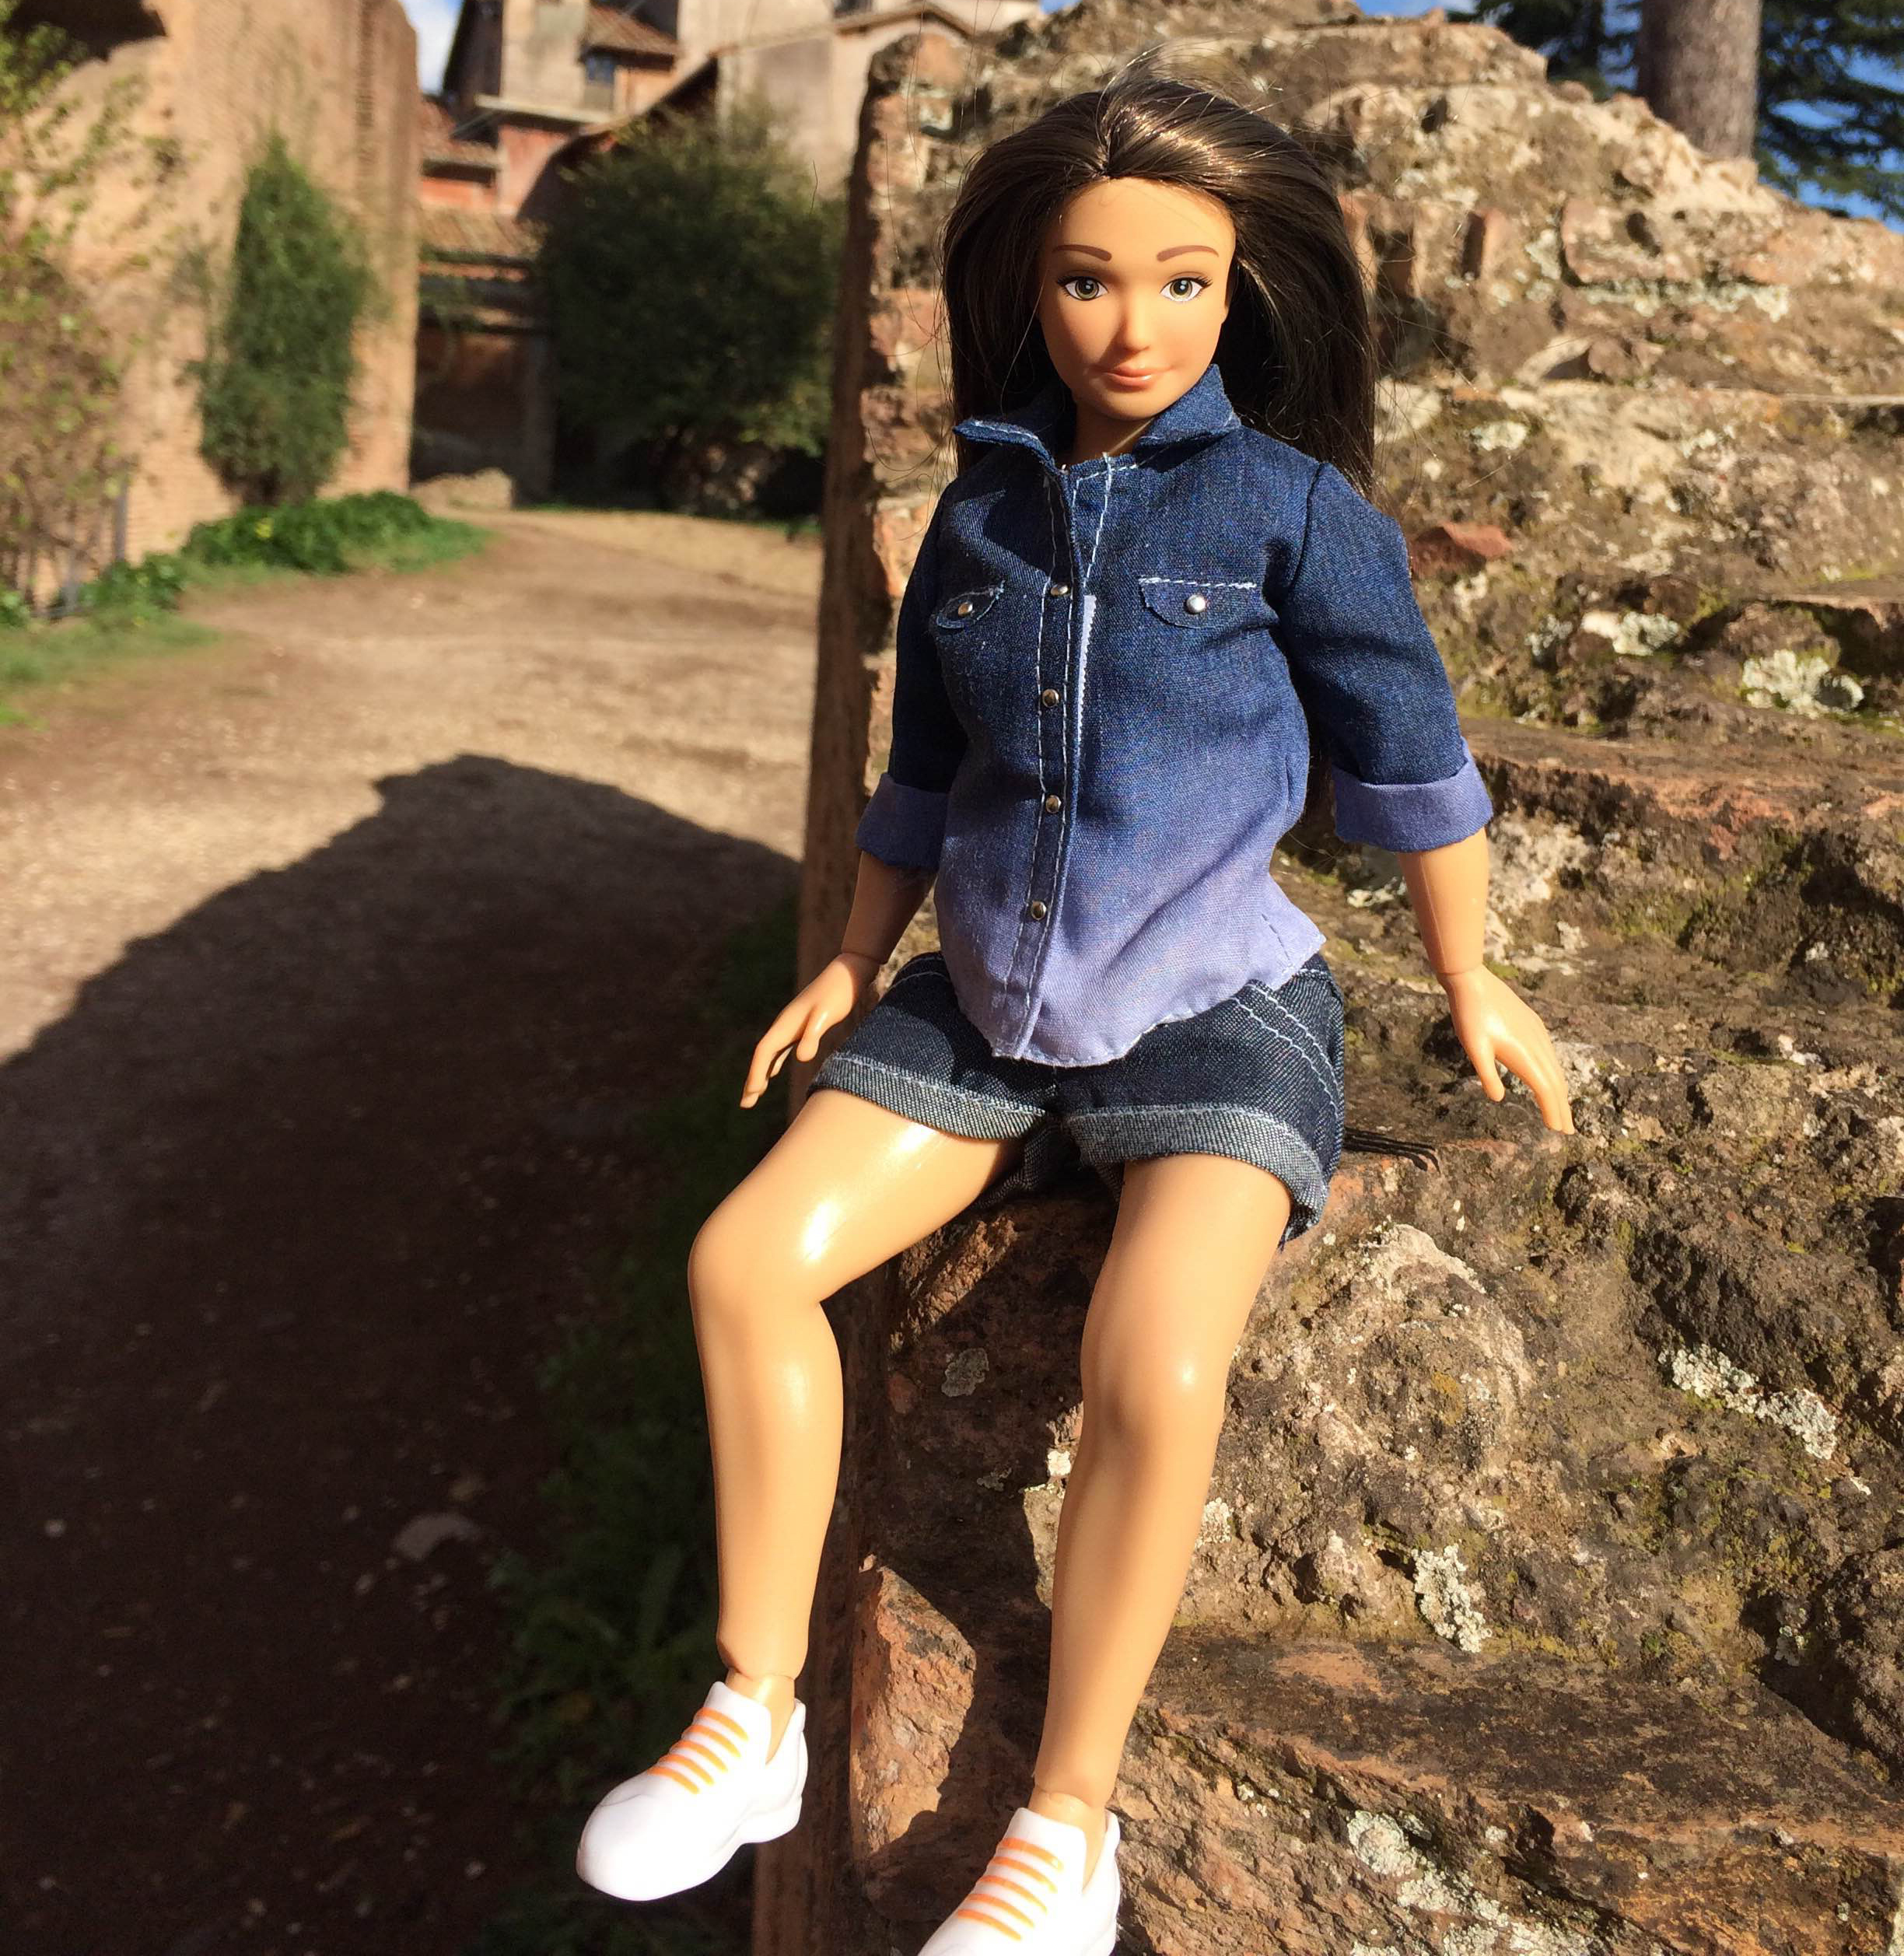 Achat Barbie – Accessoire Barbie Fashionistas le Dressing de Rêve